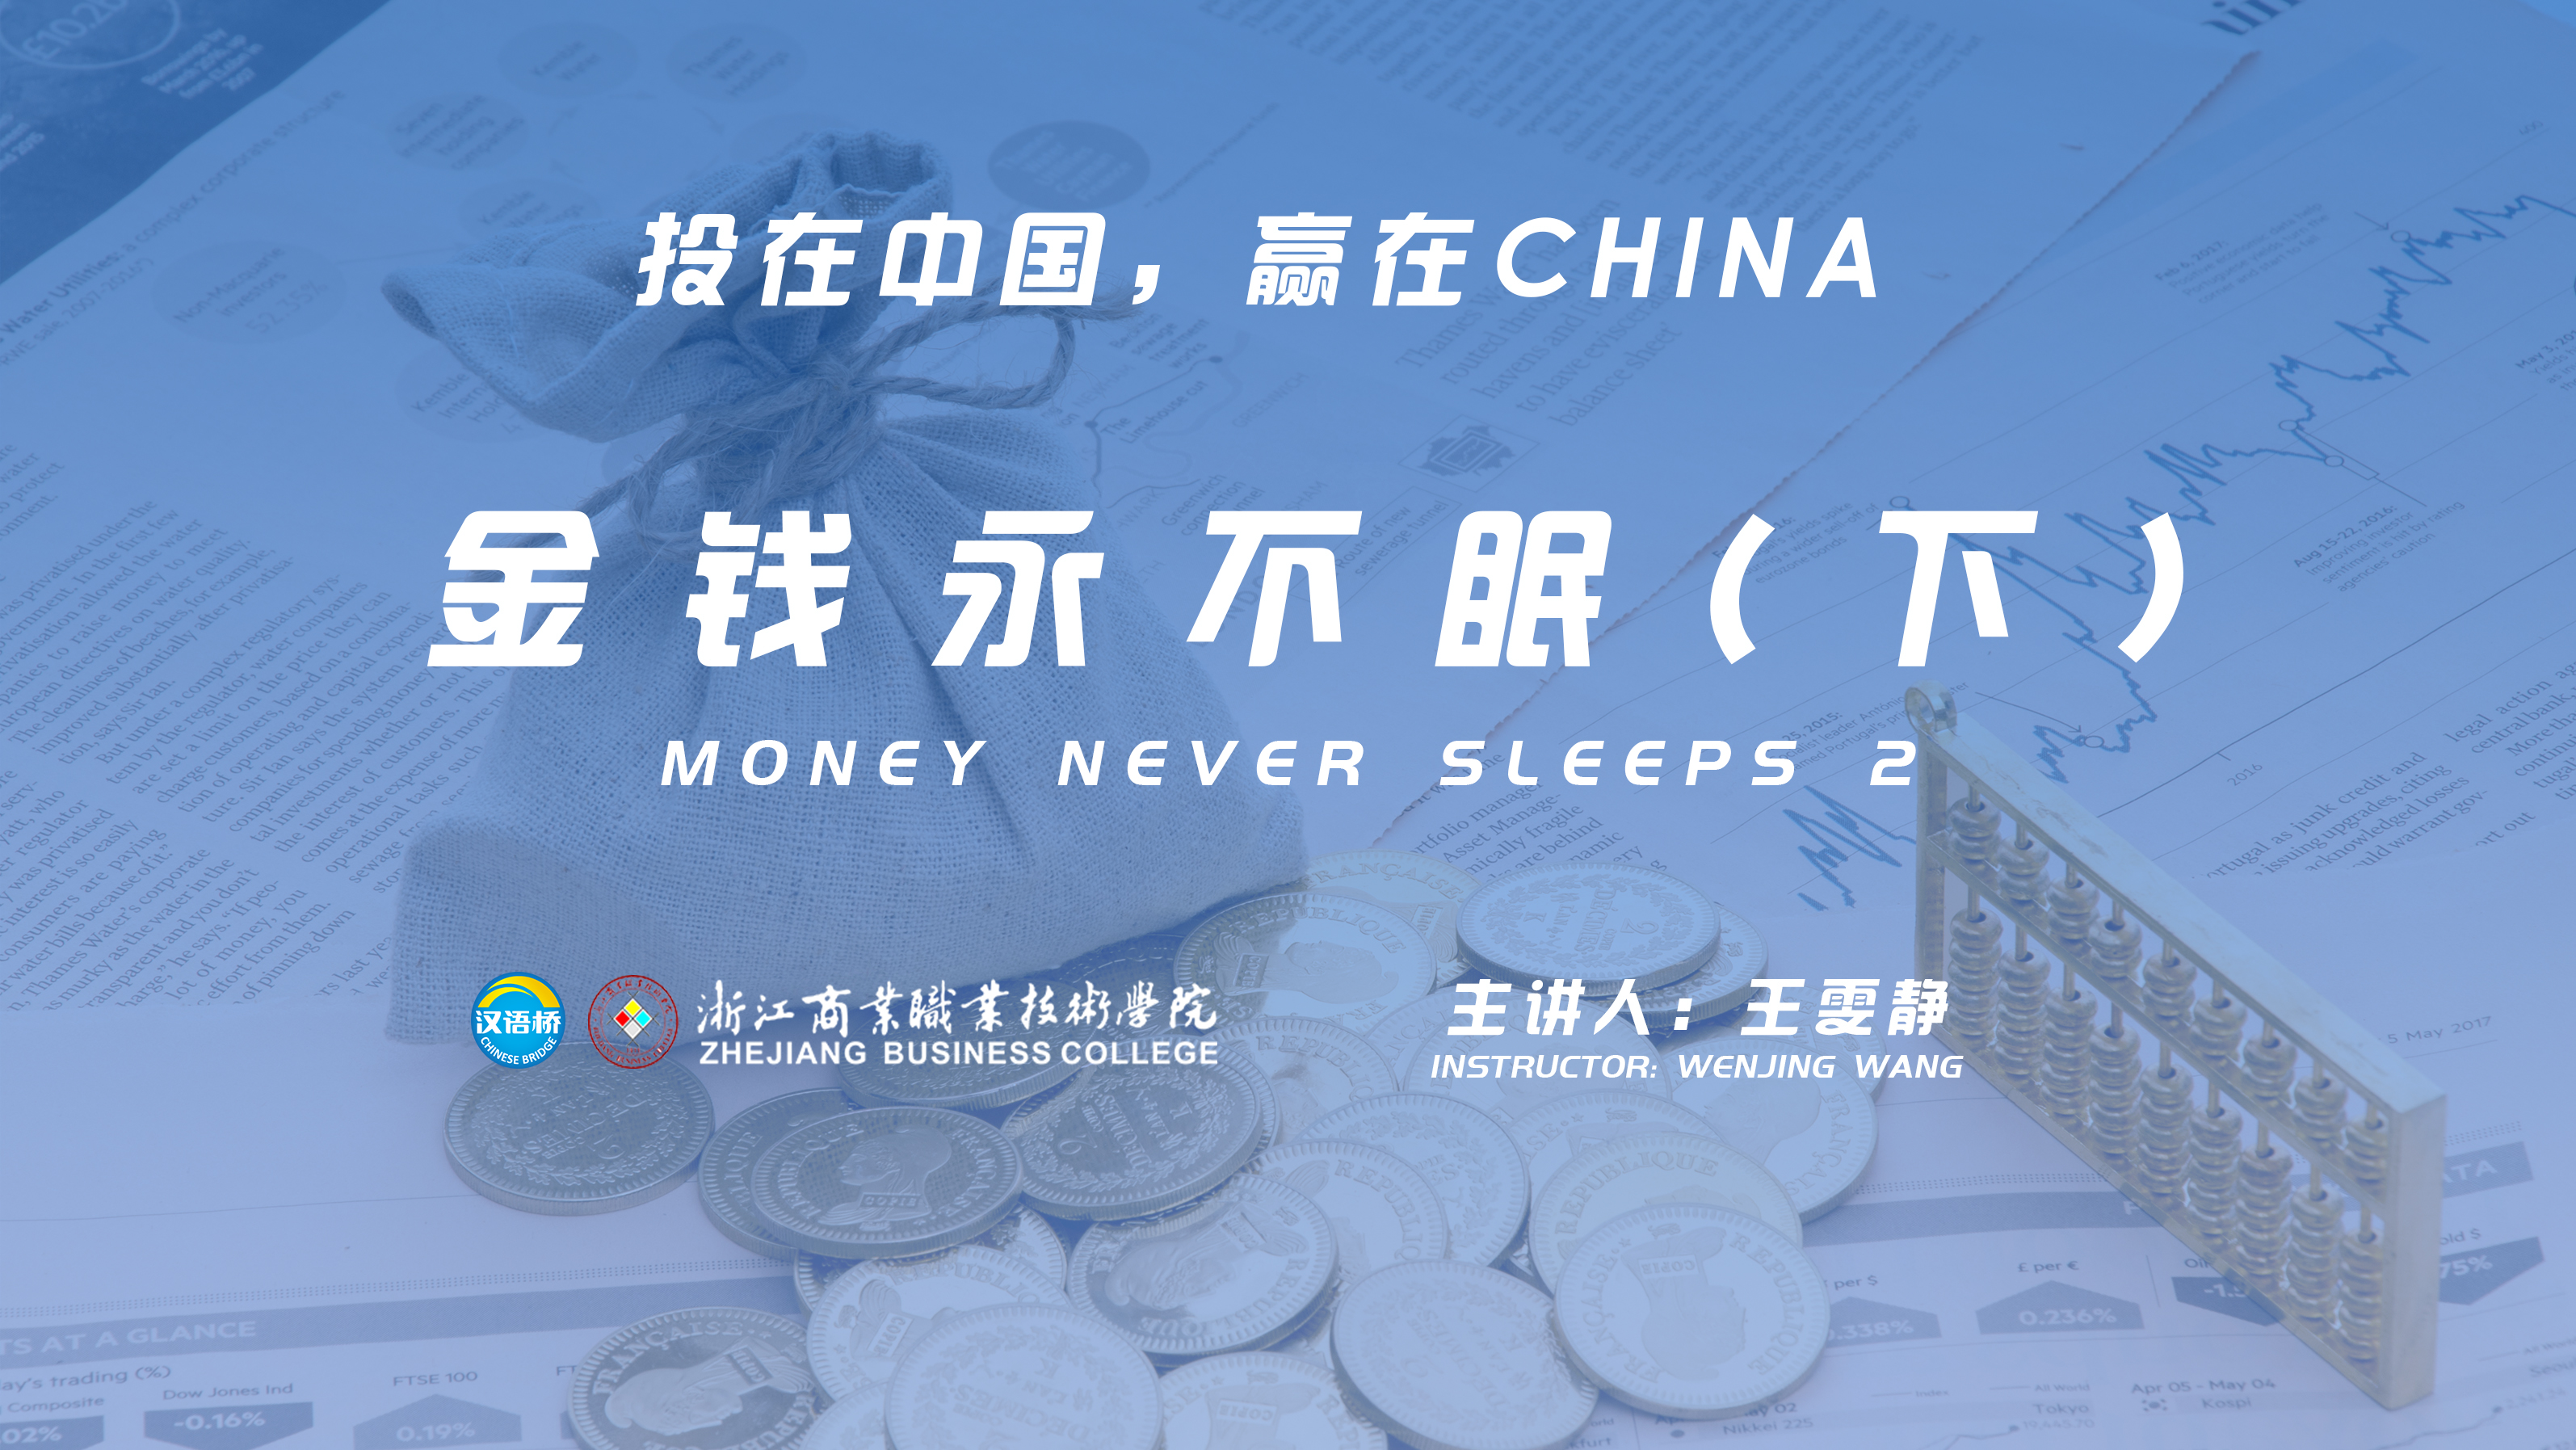 Money never sleeps（2）